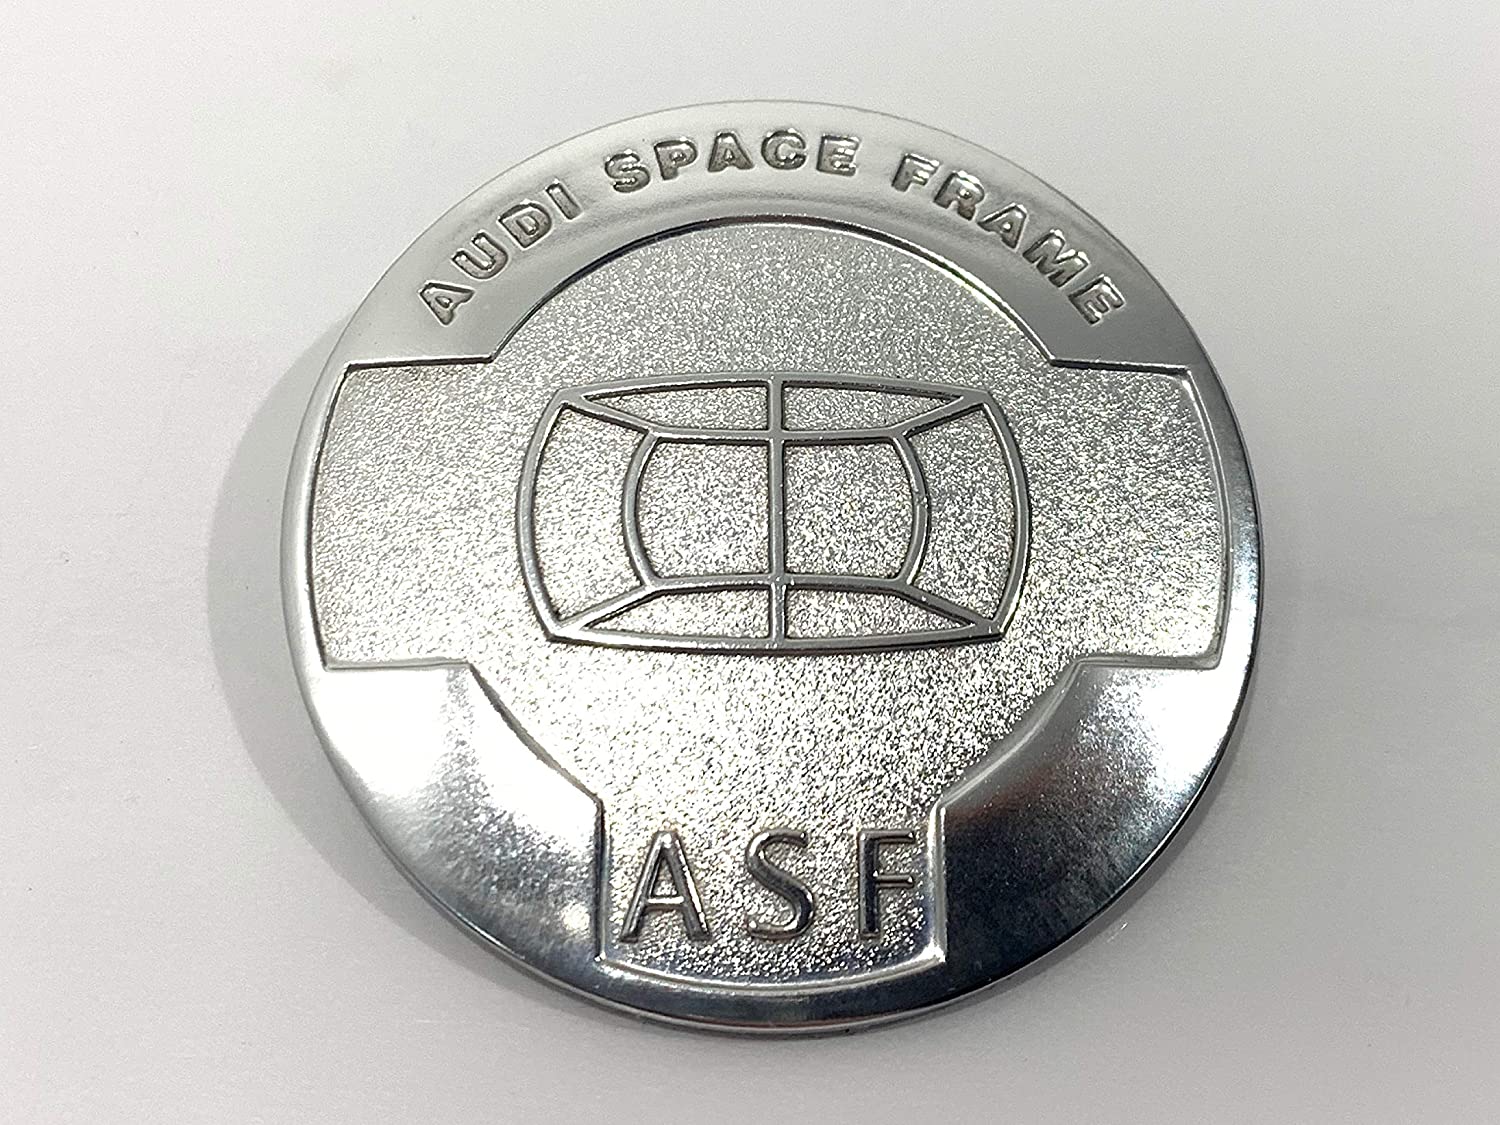 Audi ASF badge.jpg